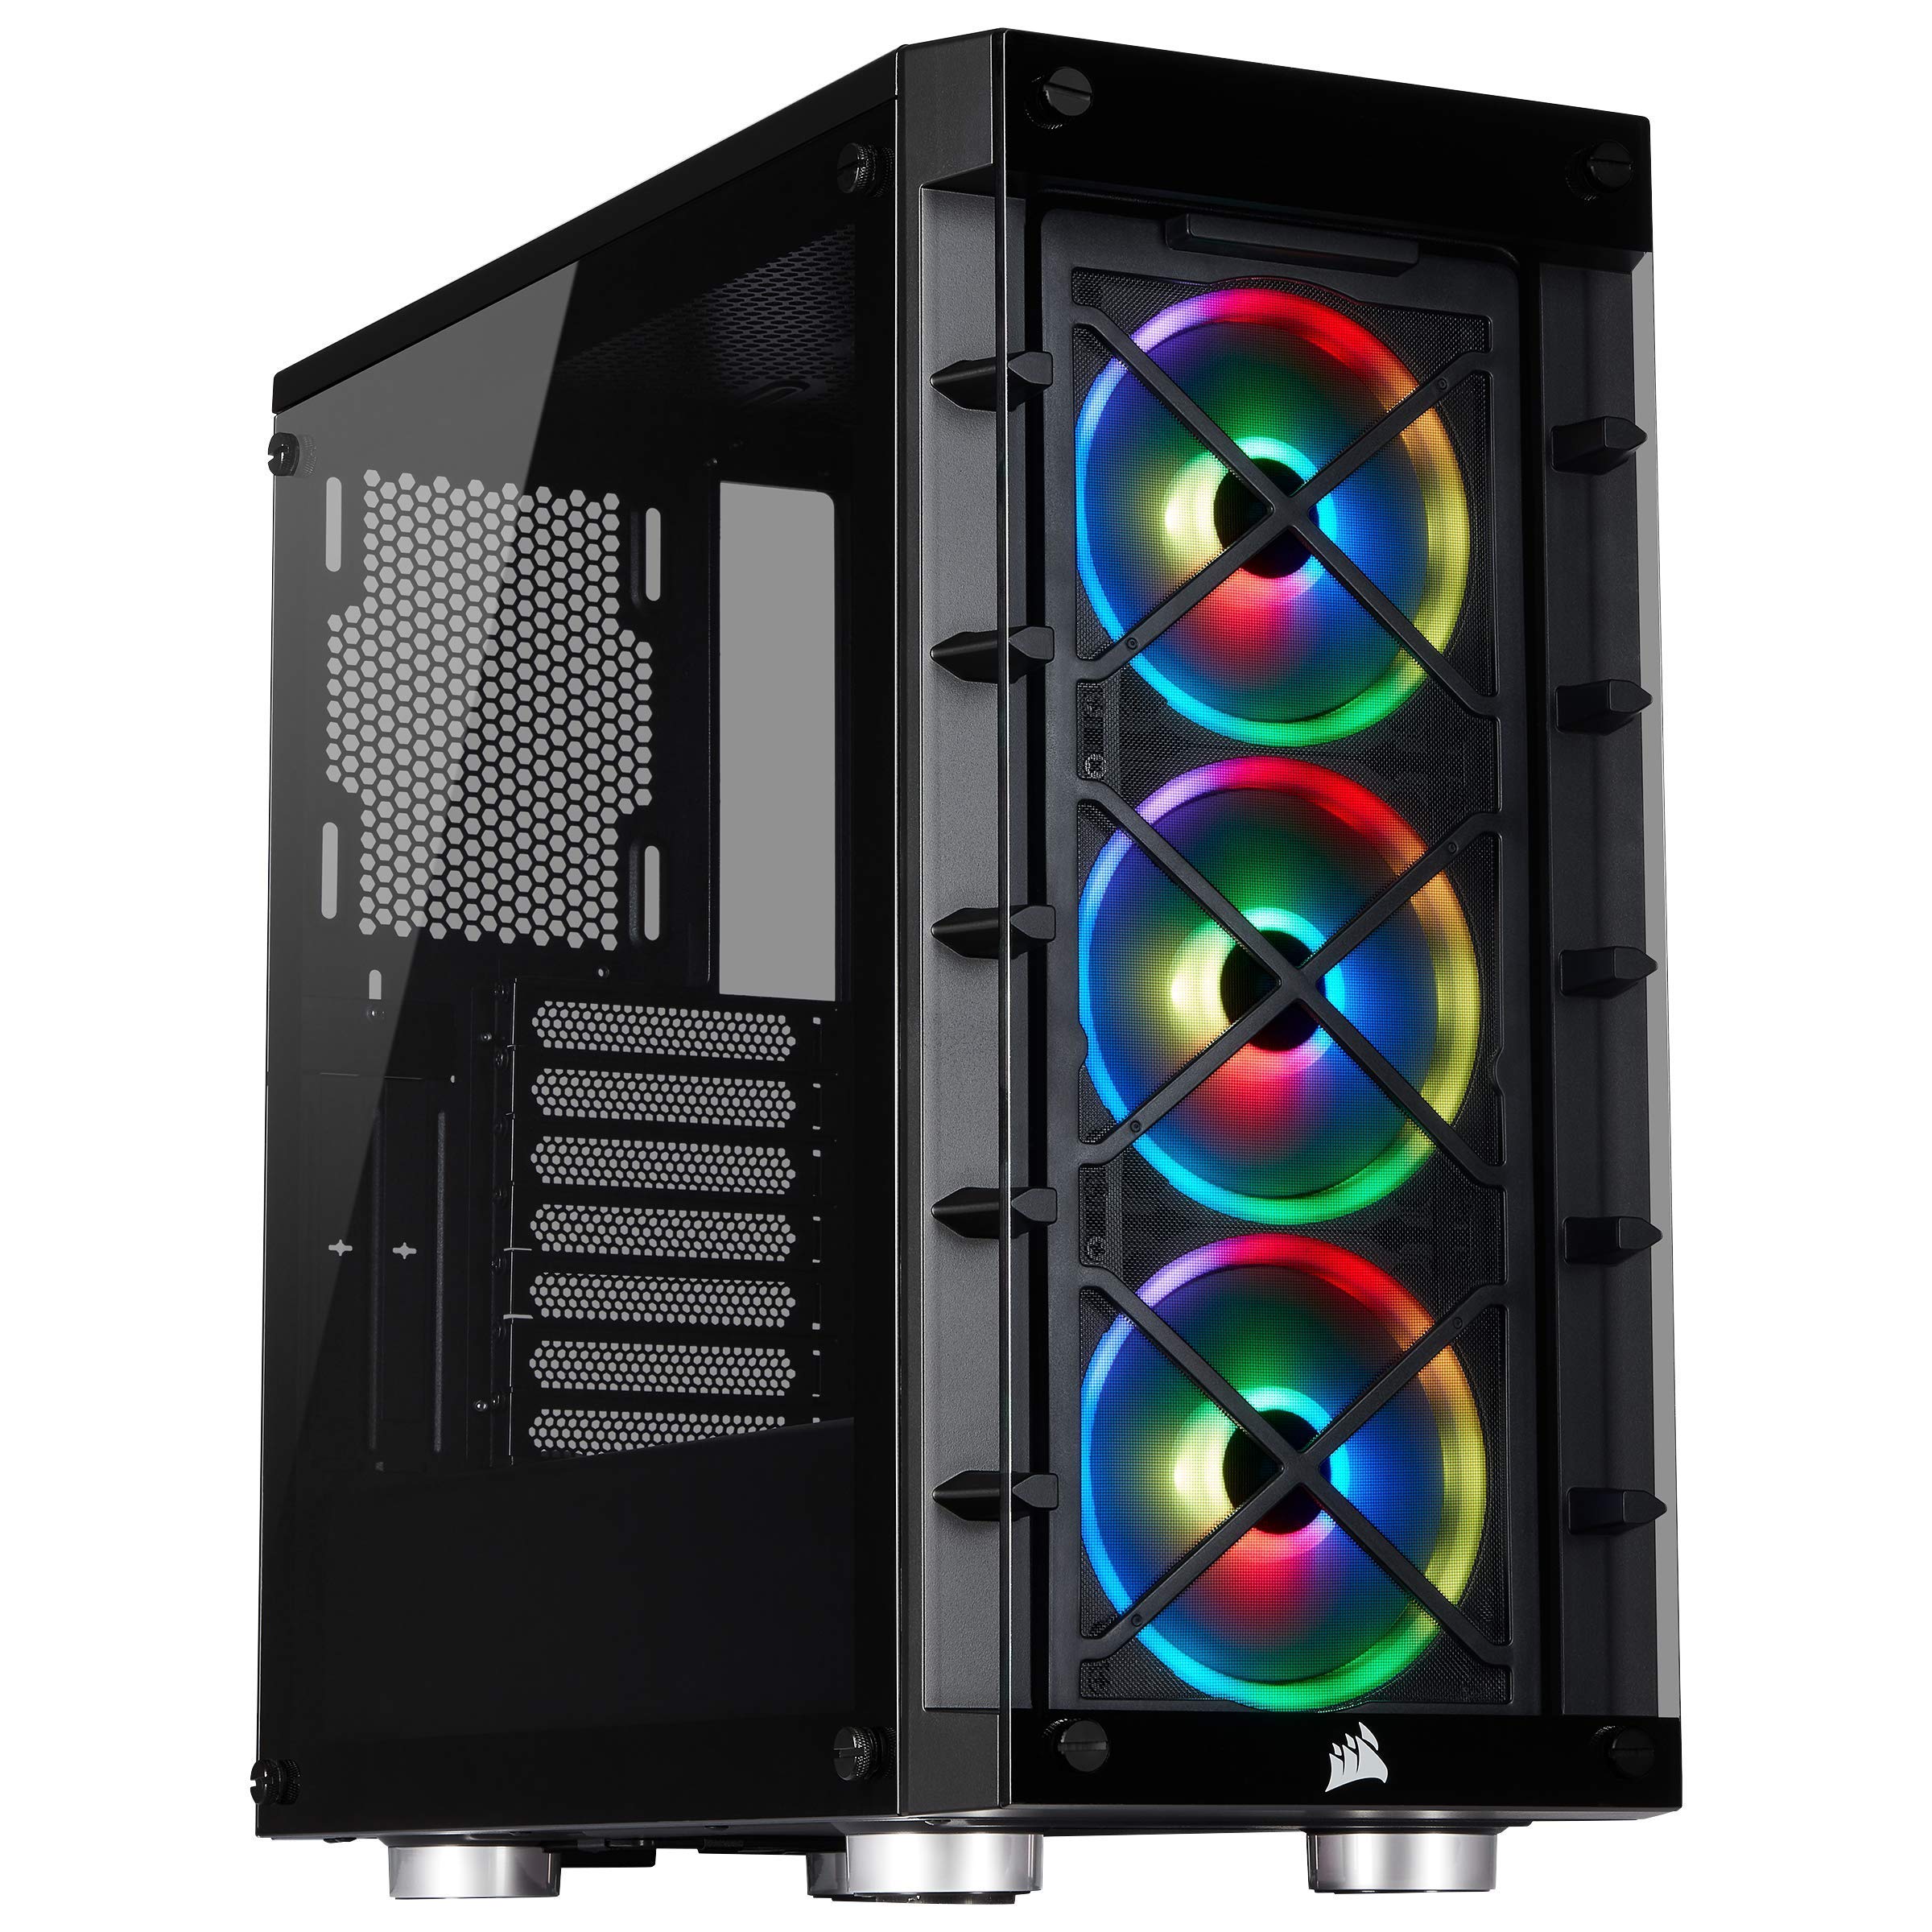 Corsair iCUE 465X RGB Mid-Tower ATX Smartes Gehäuse (Seiten und Frontscheibe aus gehärtetem Glas, 3 integrierte LL120 RGB Lüfter, vielseitige Kühloptionen) schwarz